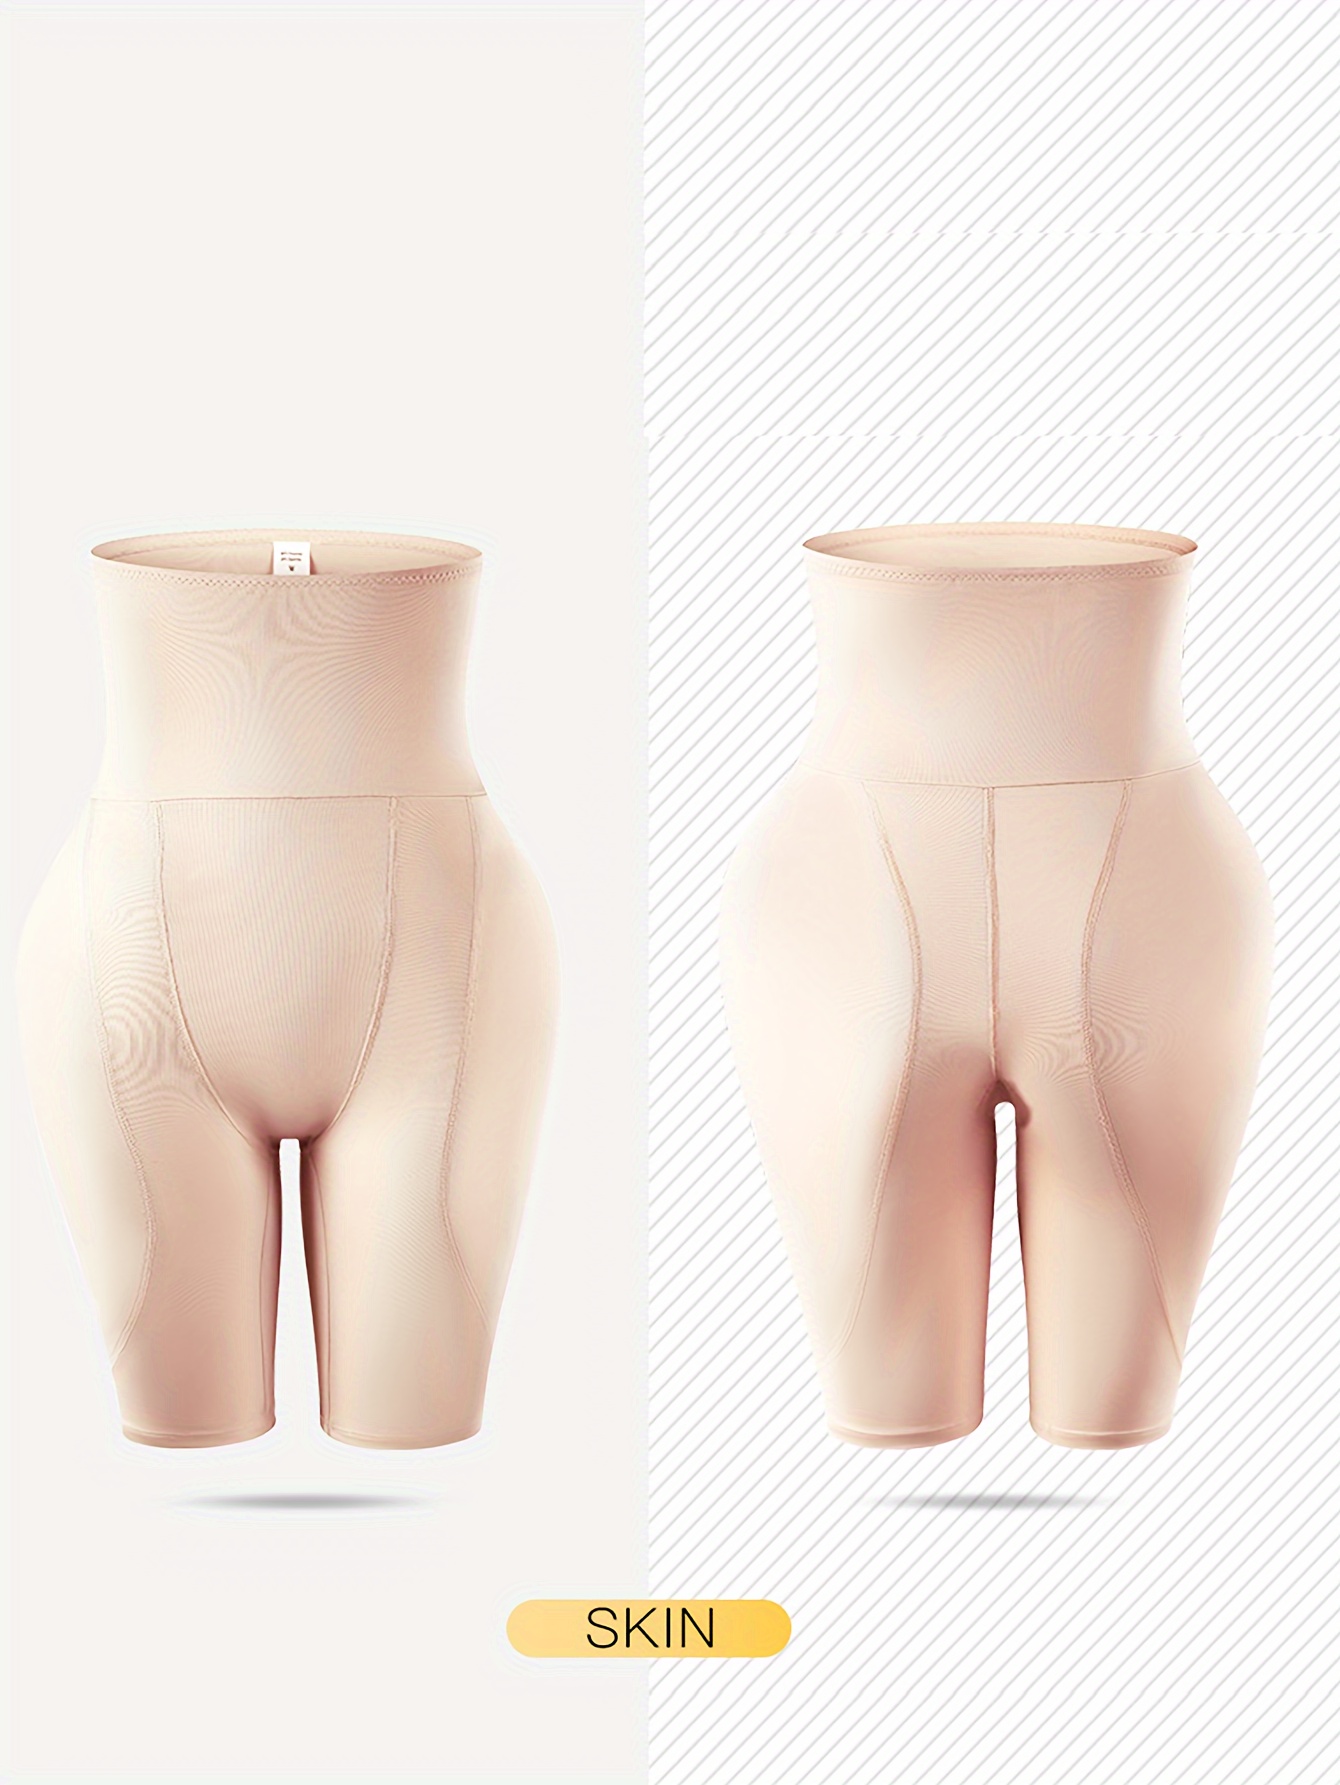 1pc Women's Hip Enhancer Underwear Butt Lifter Padded Panties Body